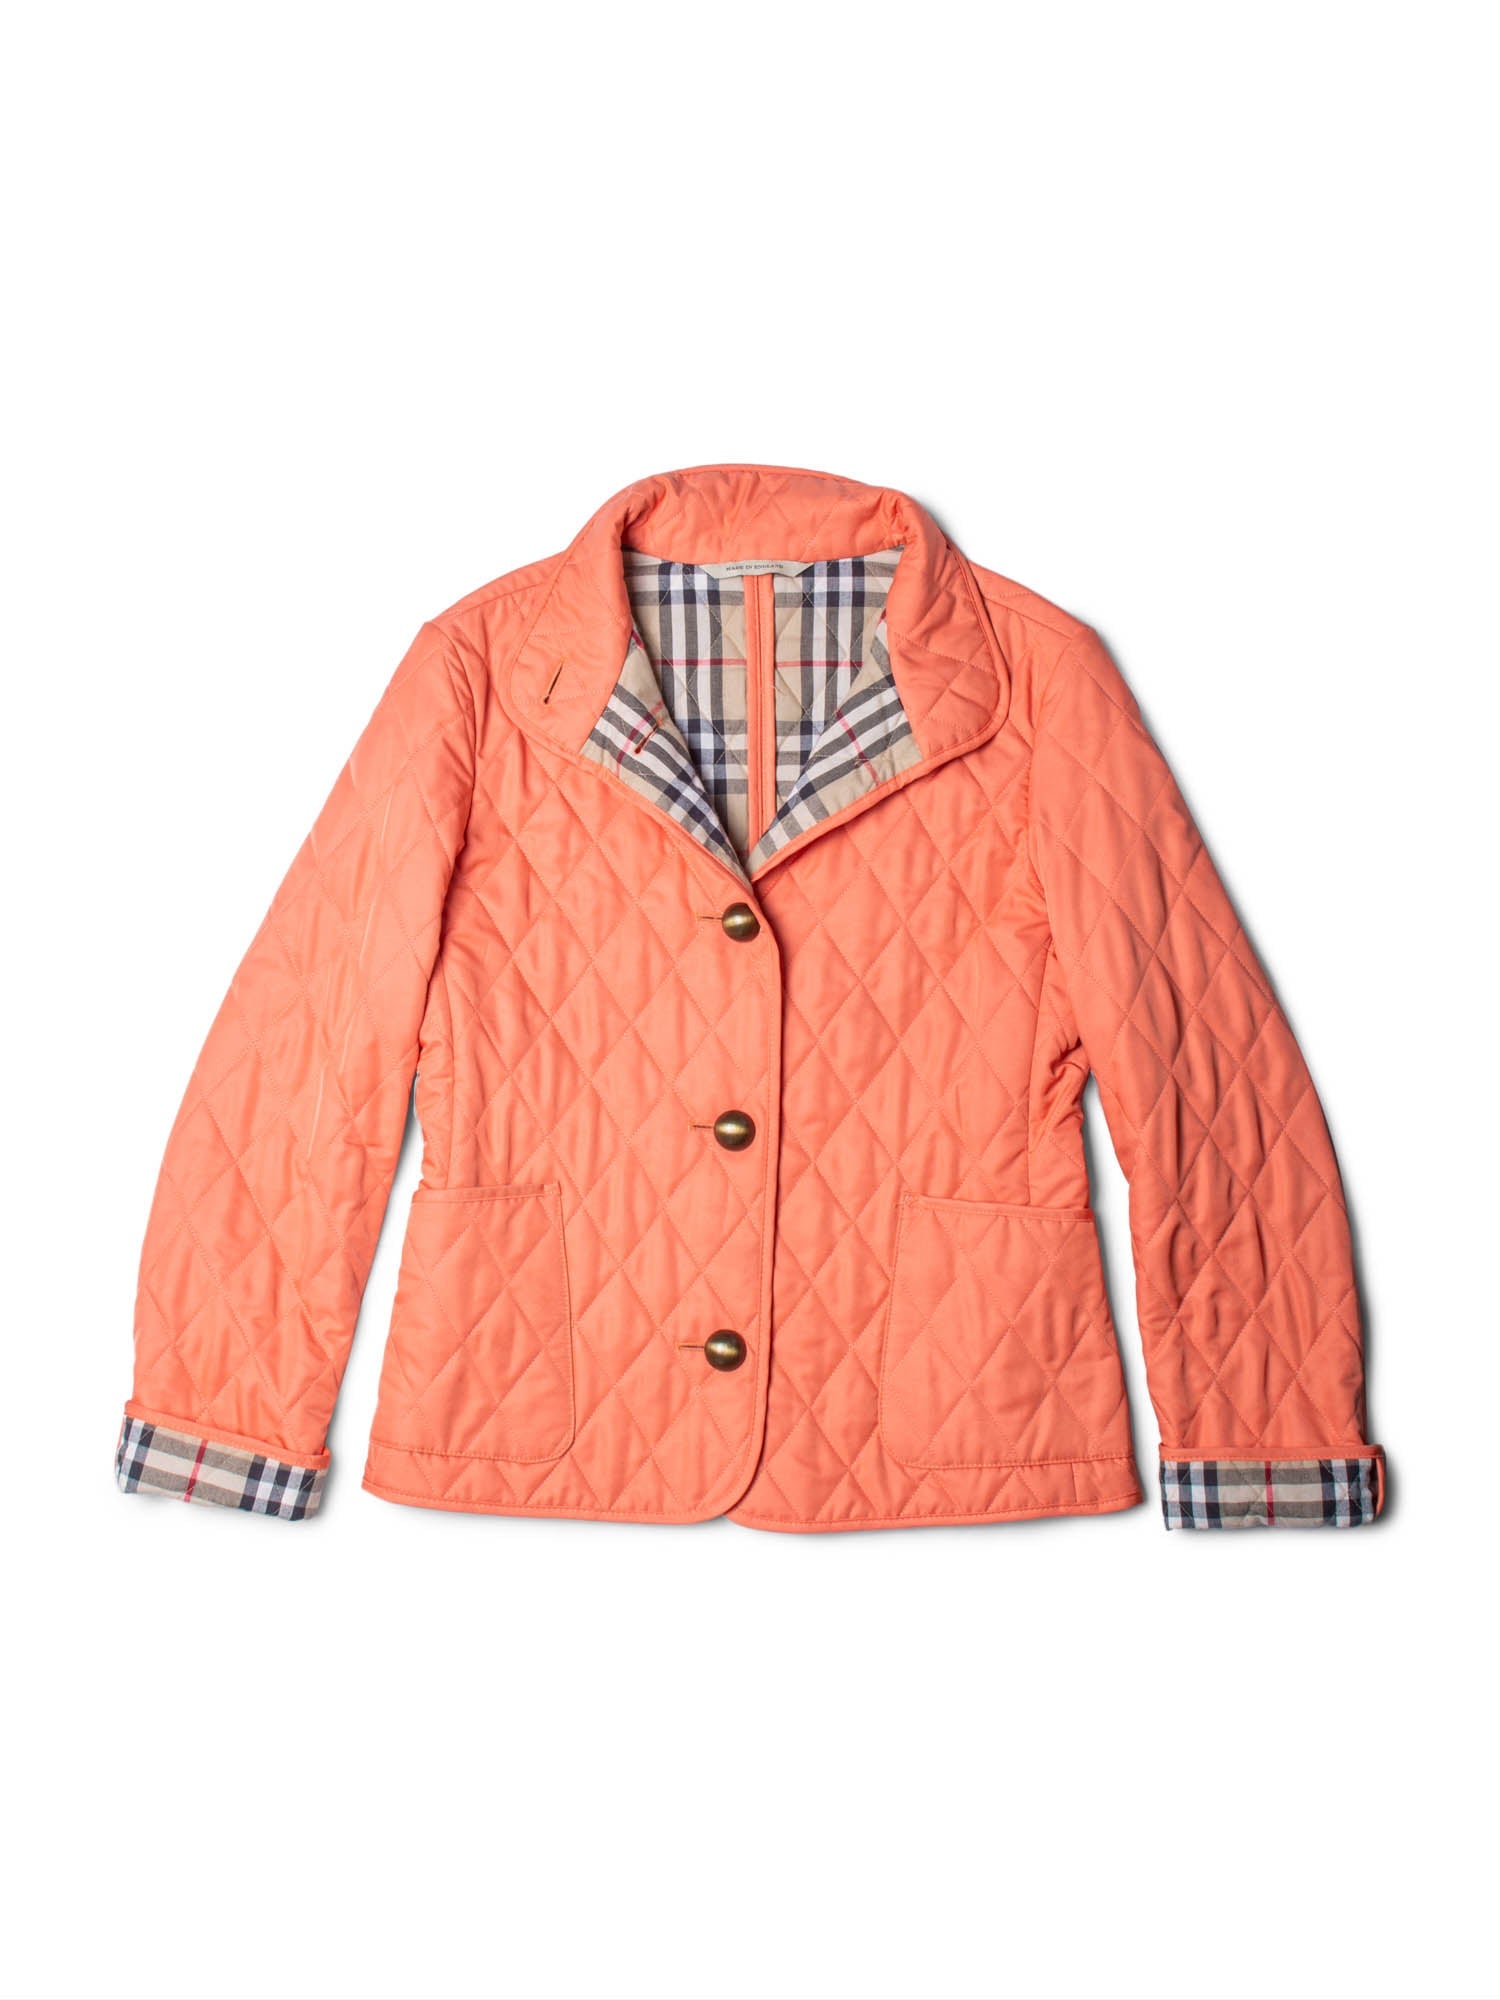 Burberry Nova Check Quilted Jacket Orange-designer resale